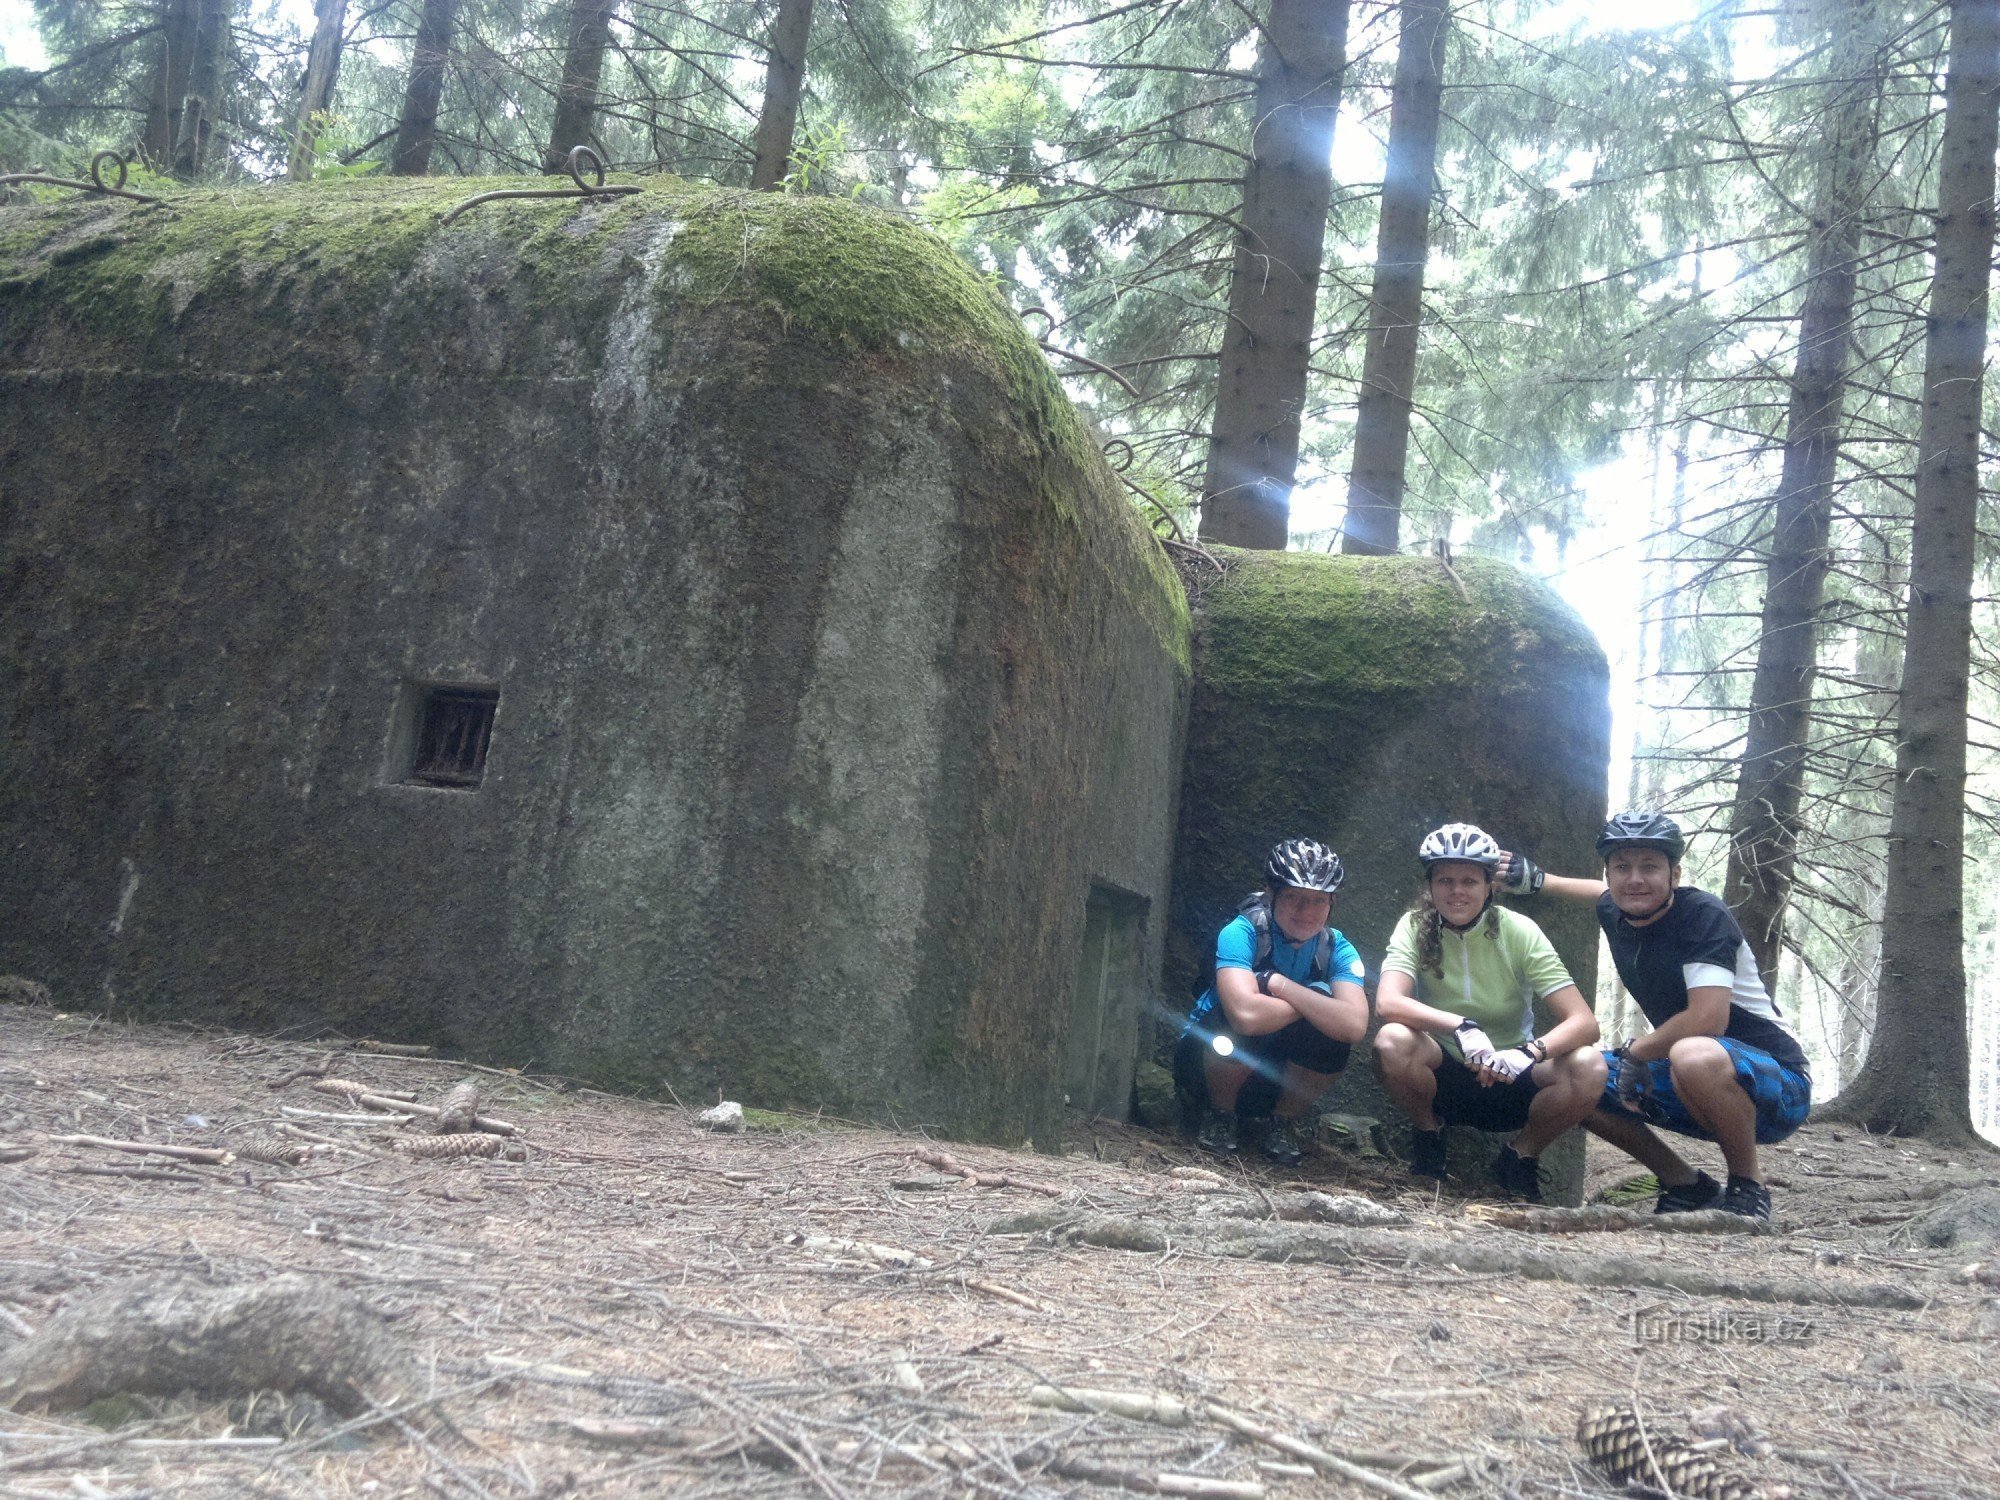 Unterwegs trafen wir auf weitere kleinere Bunker.